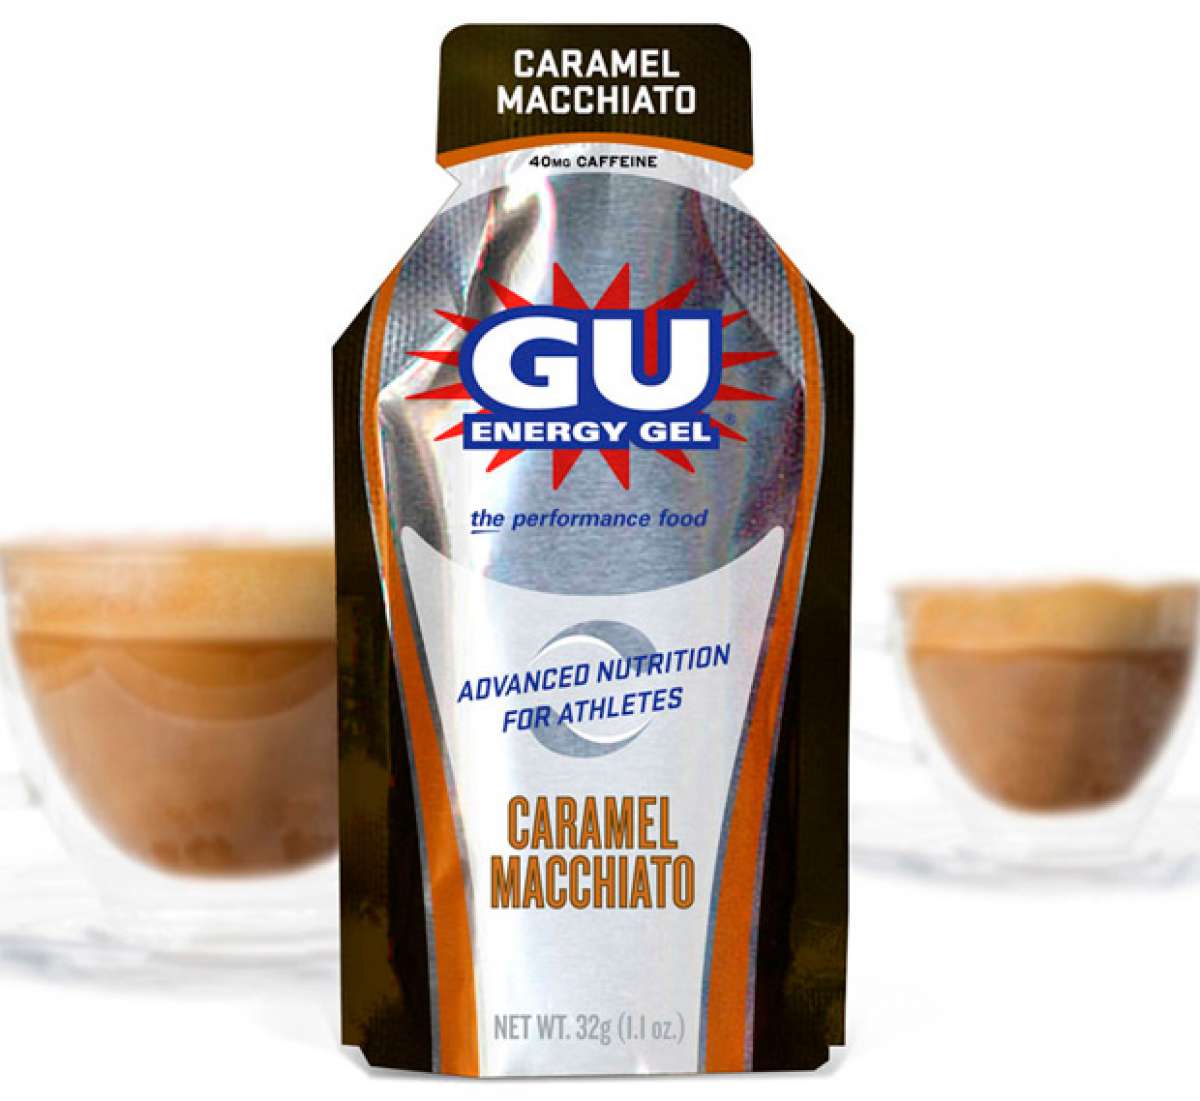 Nuevos y sugerentes sabores para los GU Energy Gel